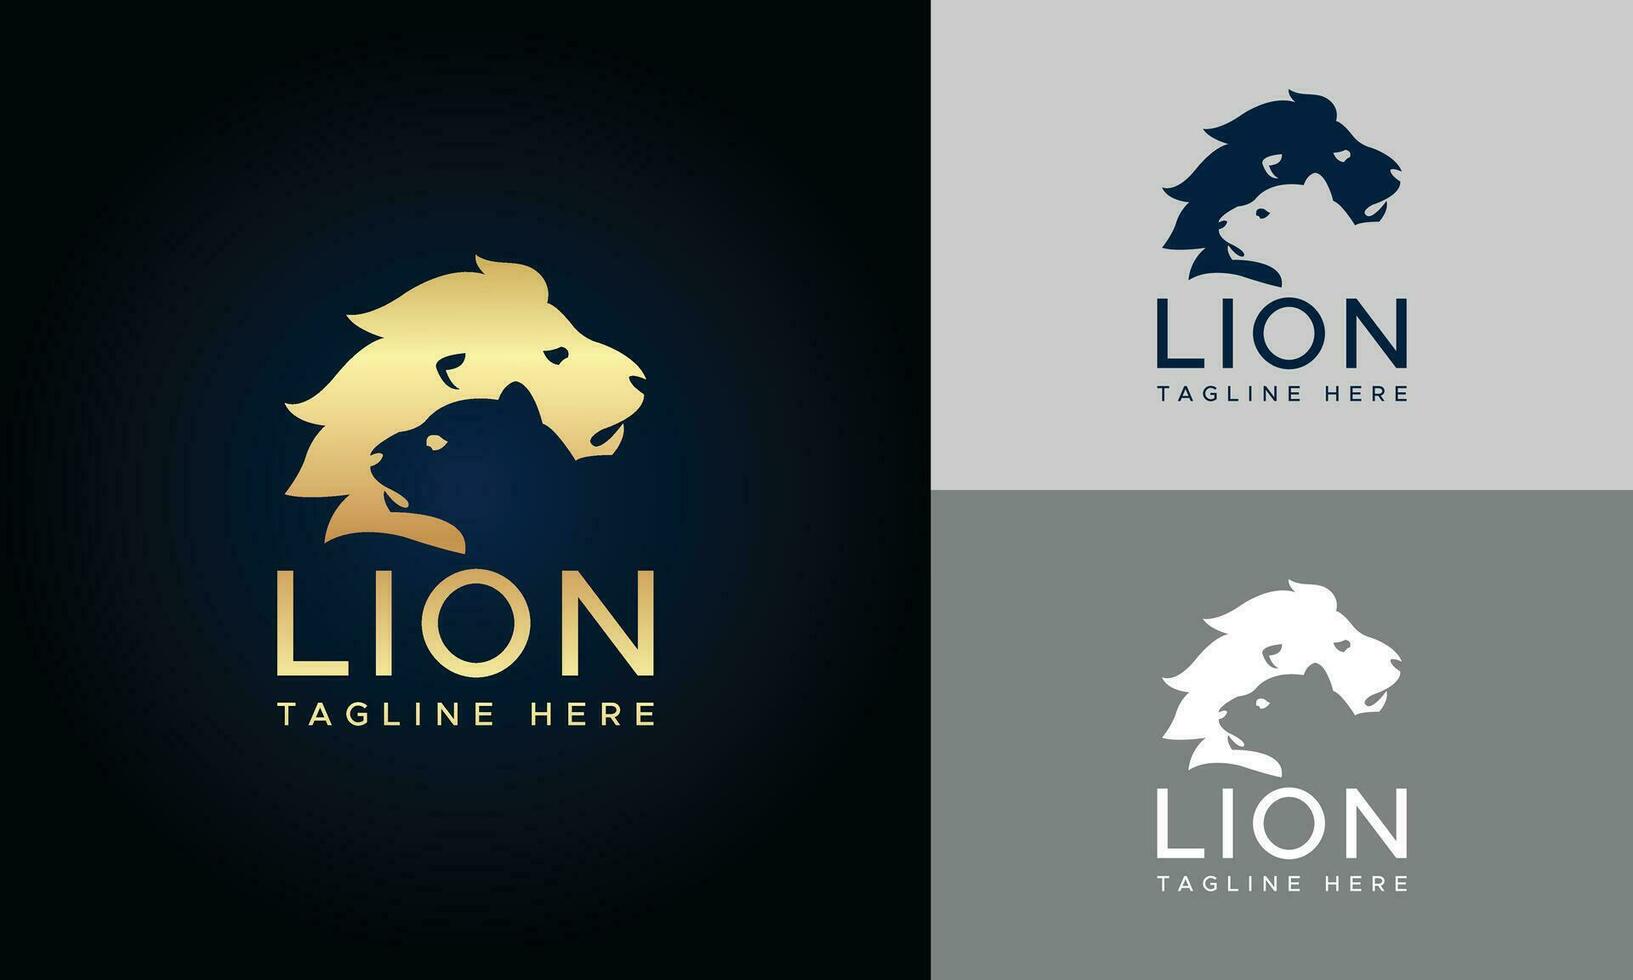 disegno vettoriale del logo scudo leone